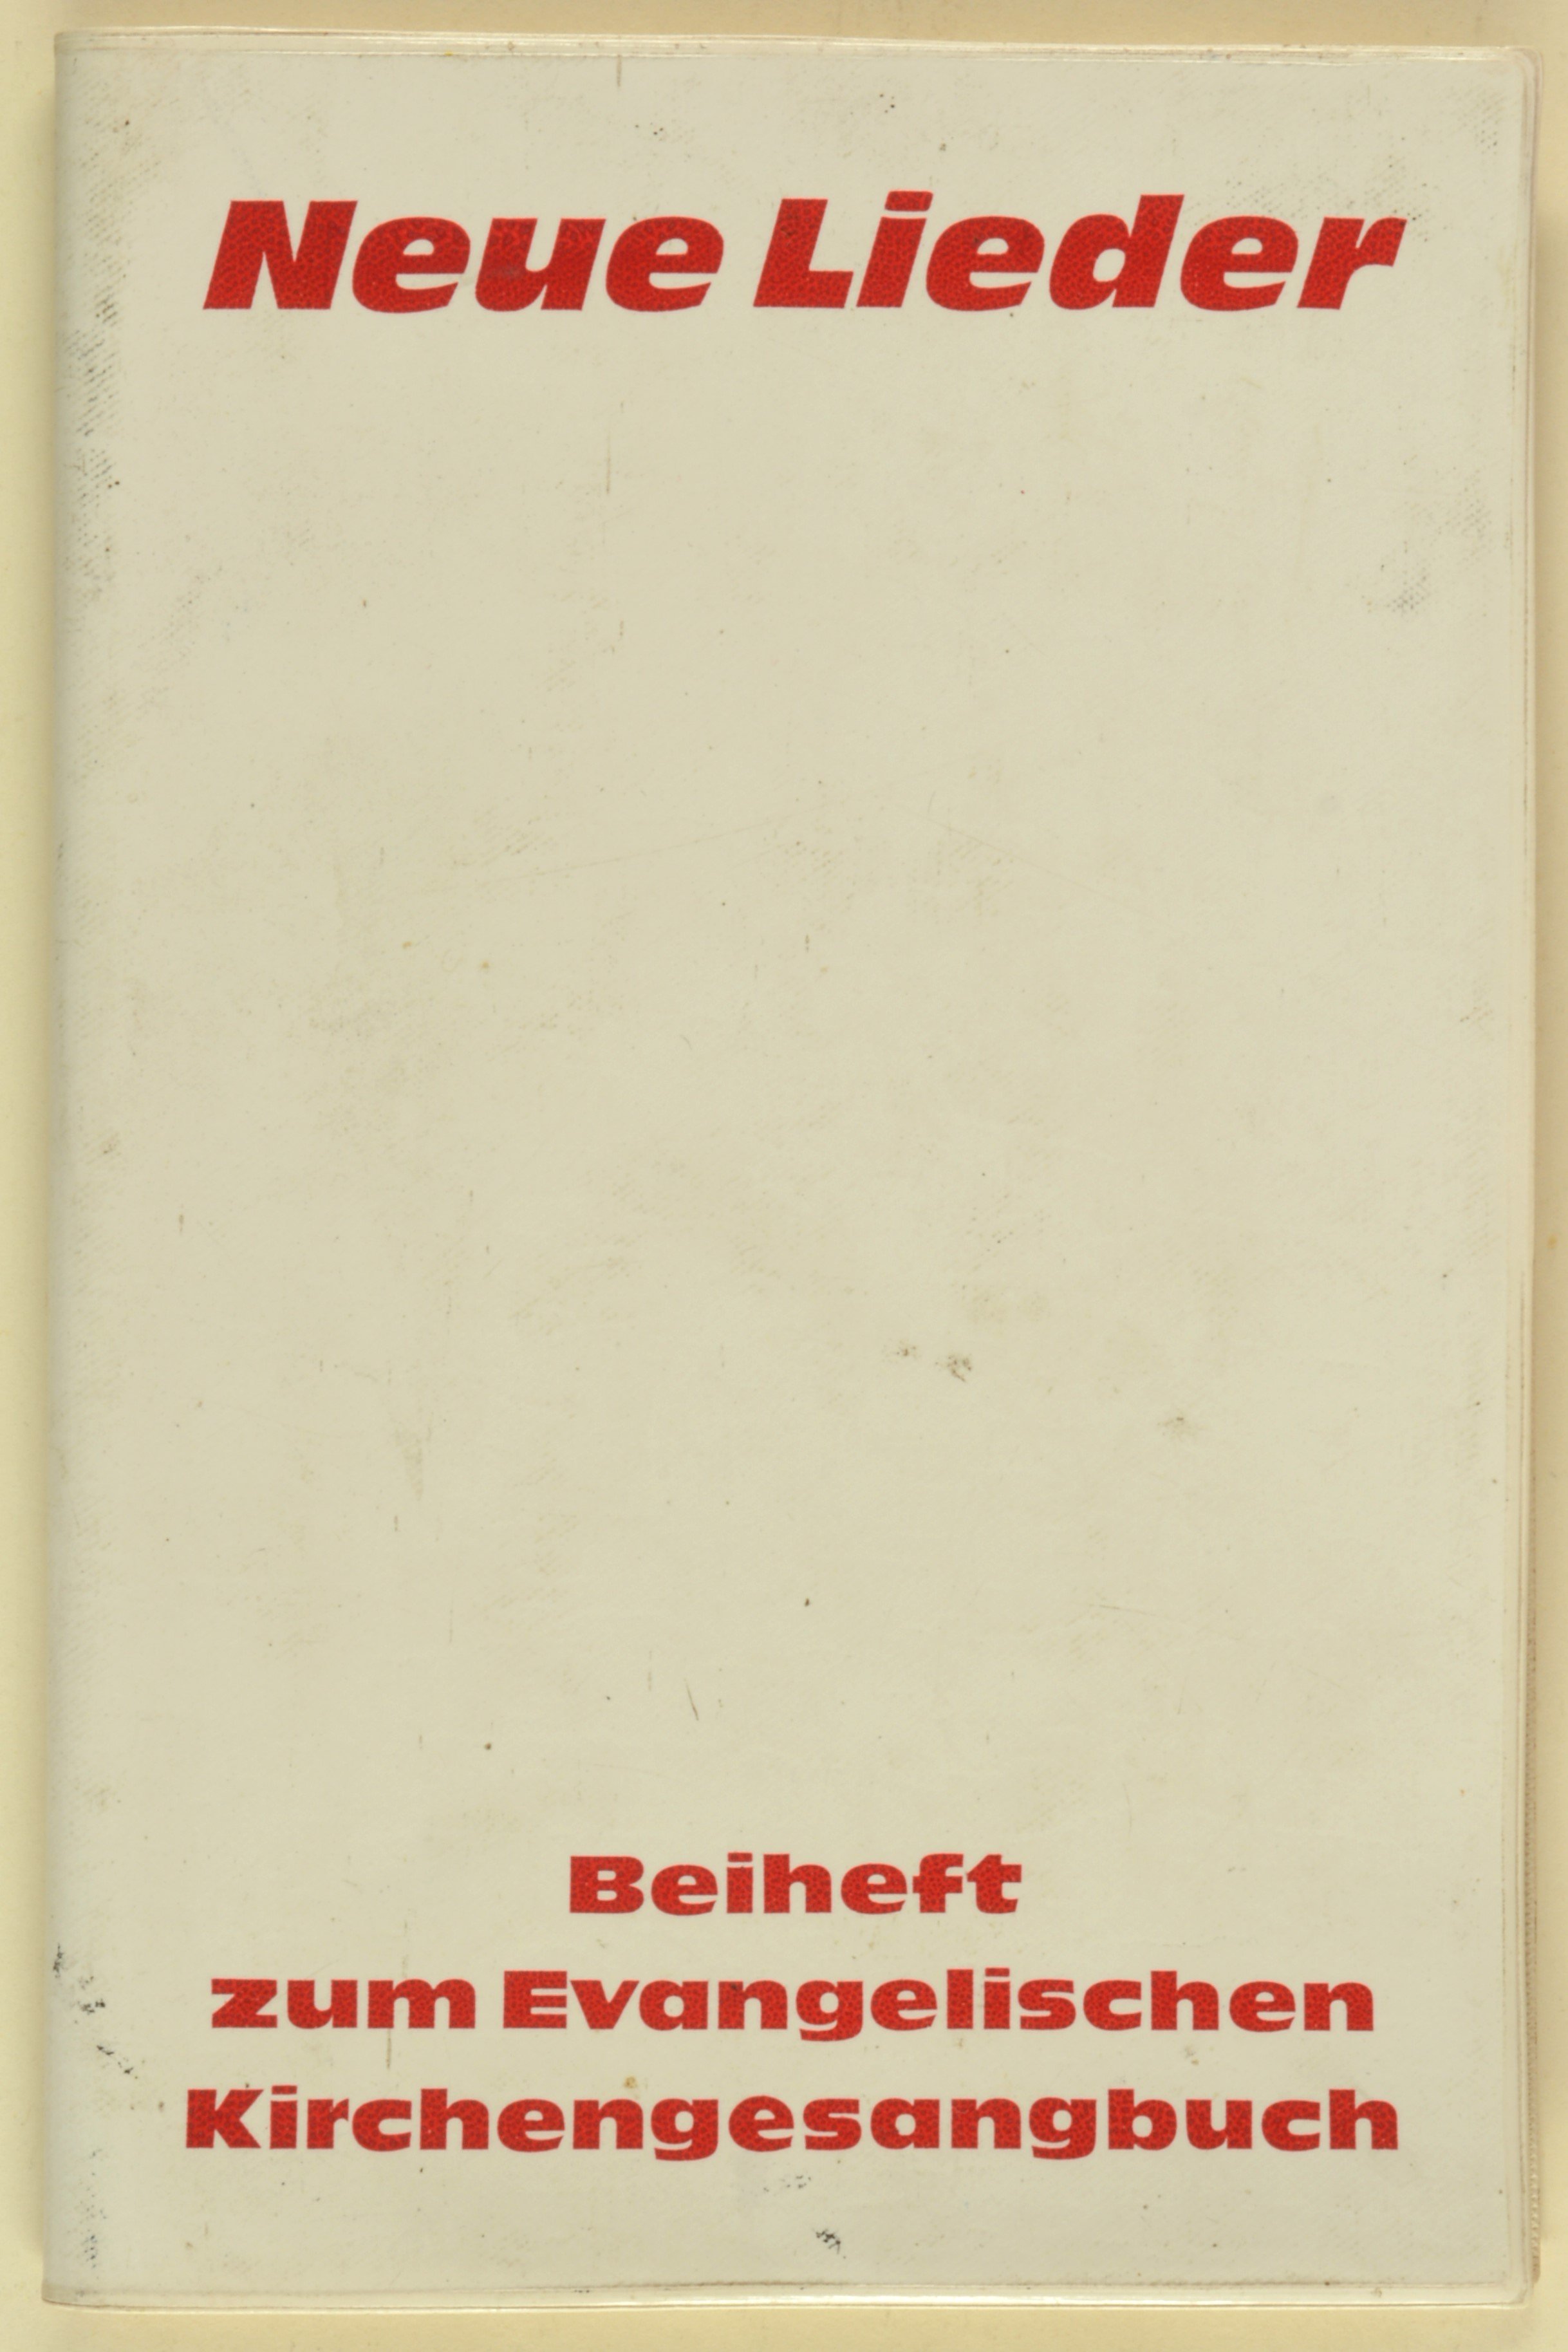 Buch: Neue Lieder. Beiheft zum Evangelischen Kirchengesangbuch, Berlin 1978 (DDR Geschichtsmuseum im Dokumentationszentrum Perleberg CC BY-SA)